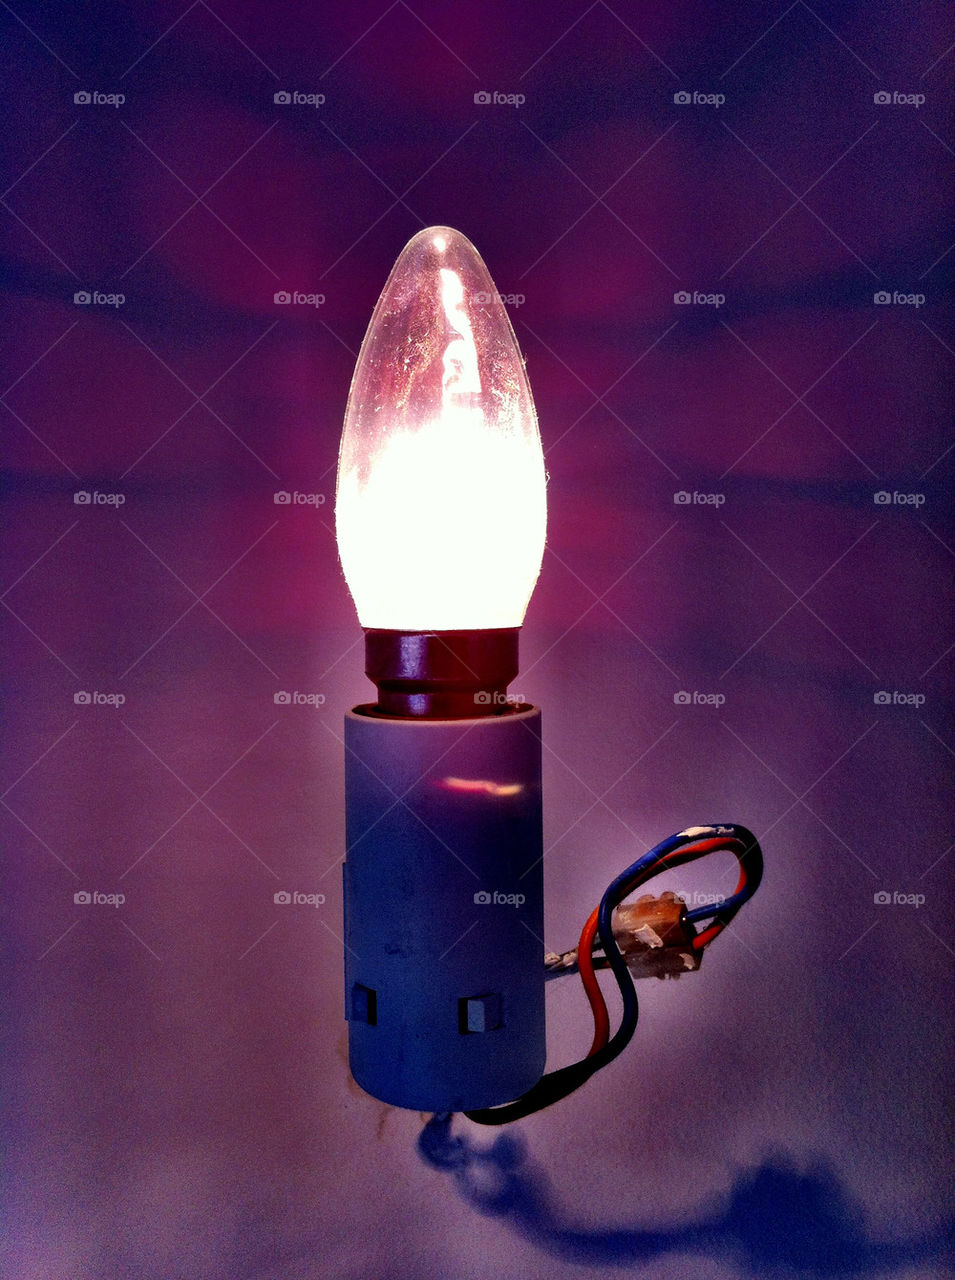 lamp idea on 40 by pixelakias